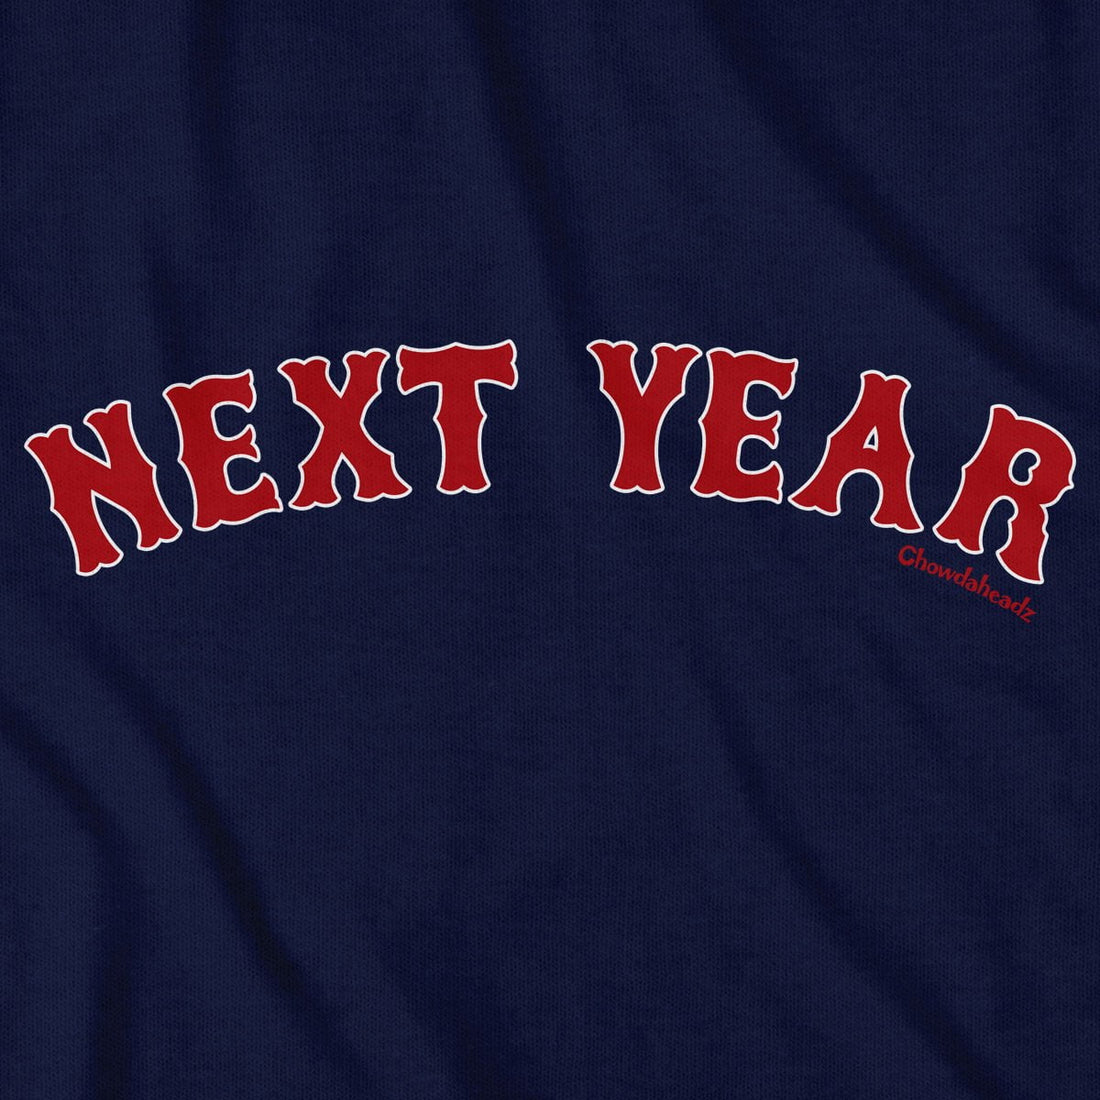 Next Year Boston T-Shirt - Chowdaheadz